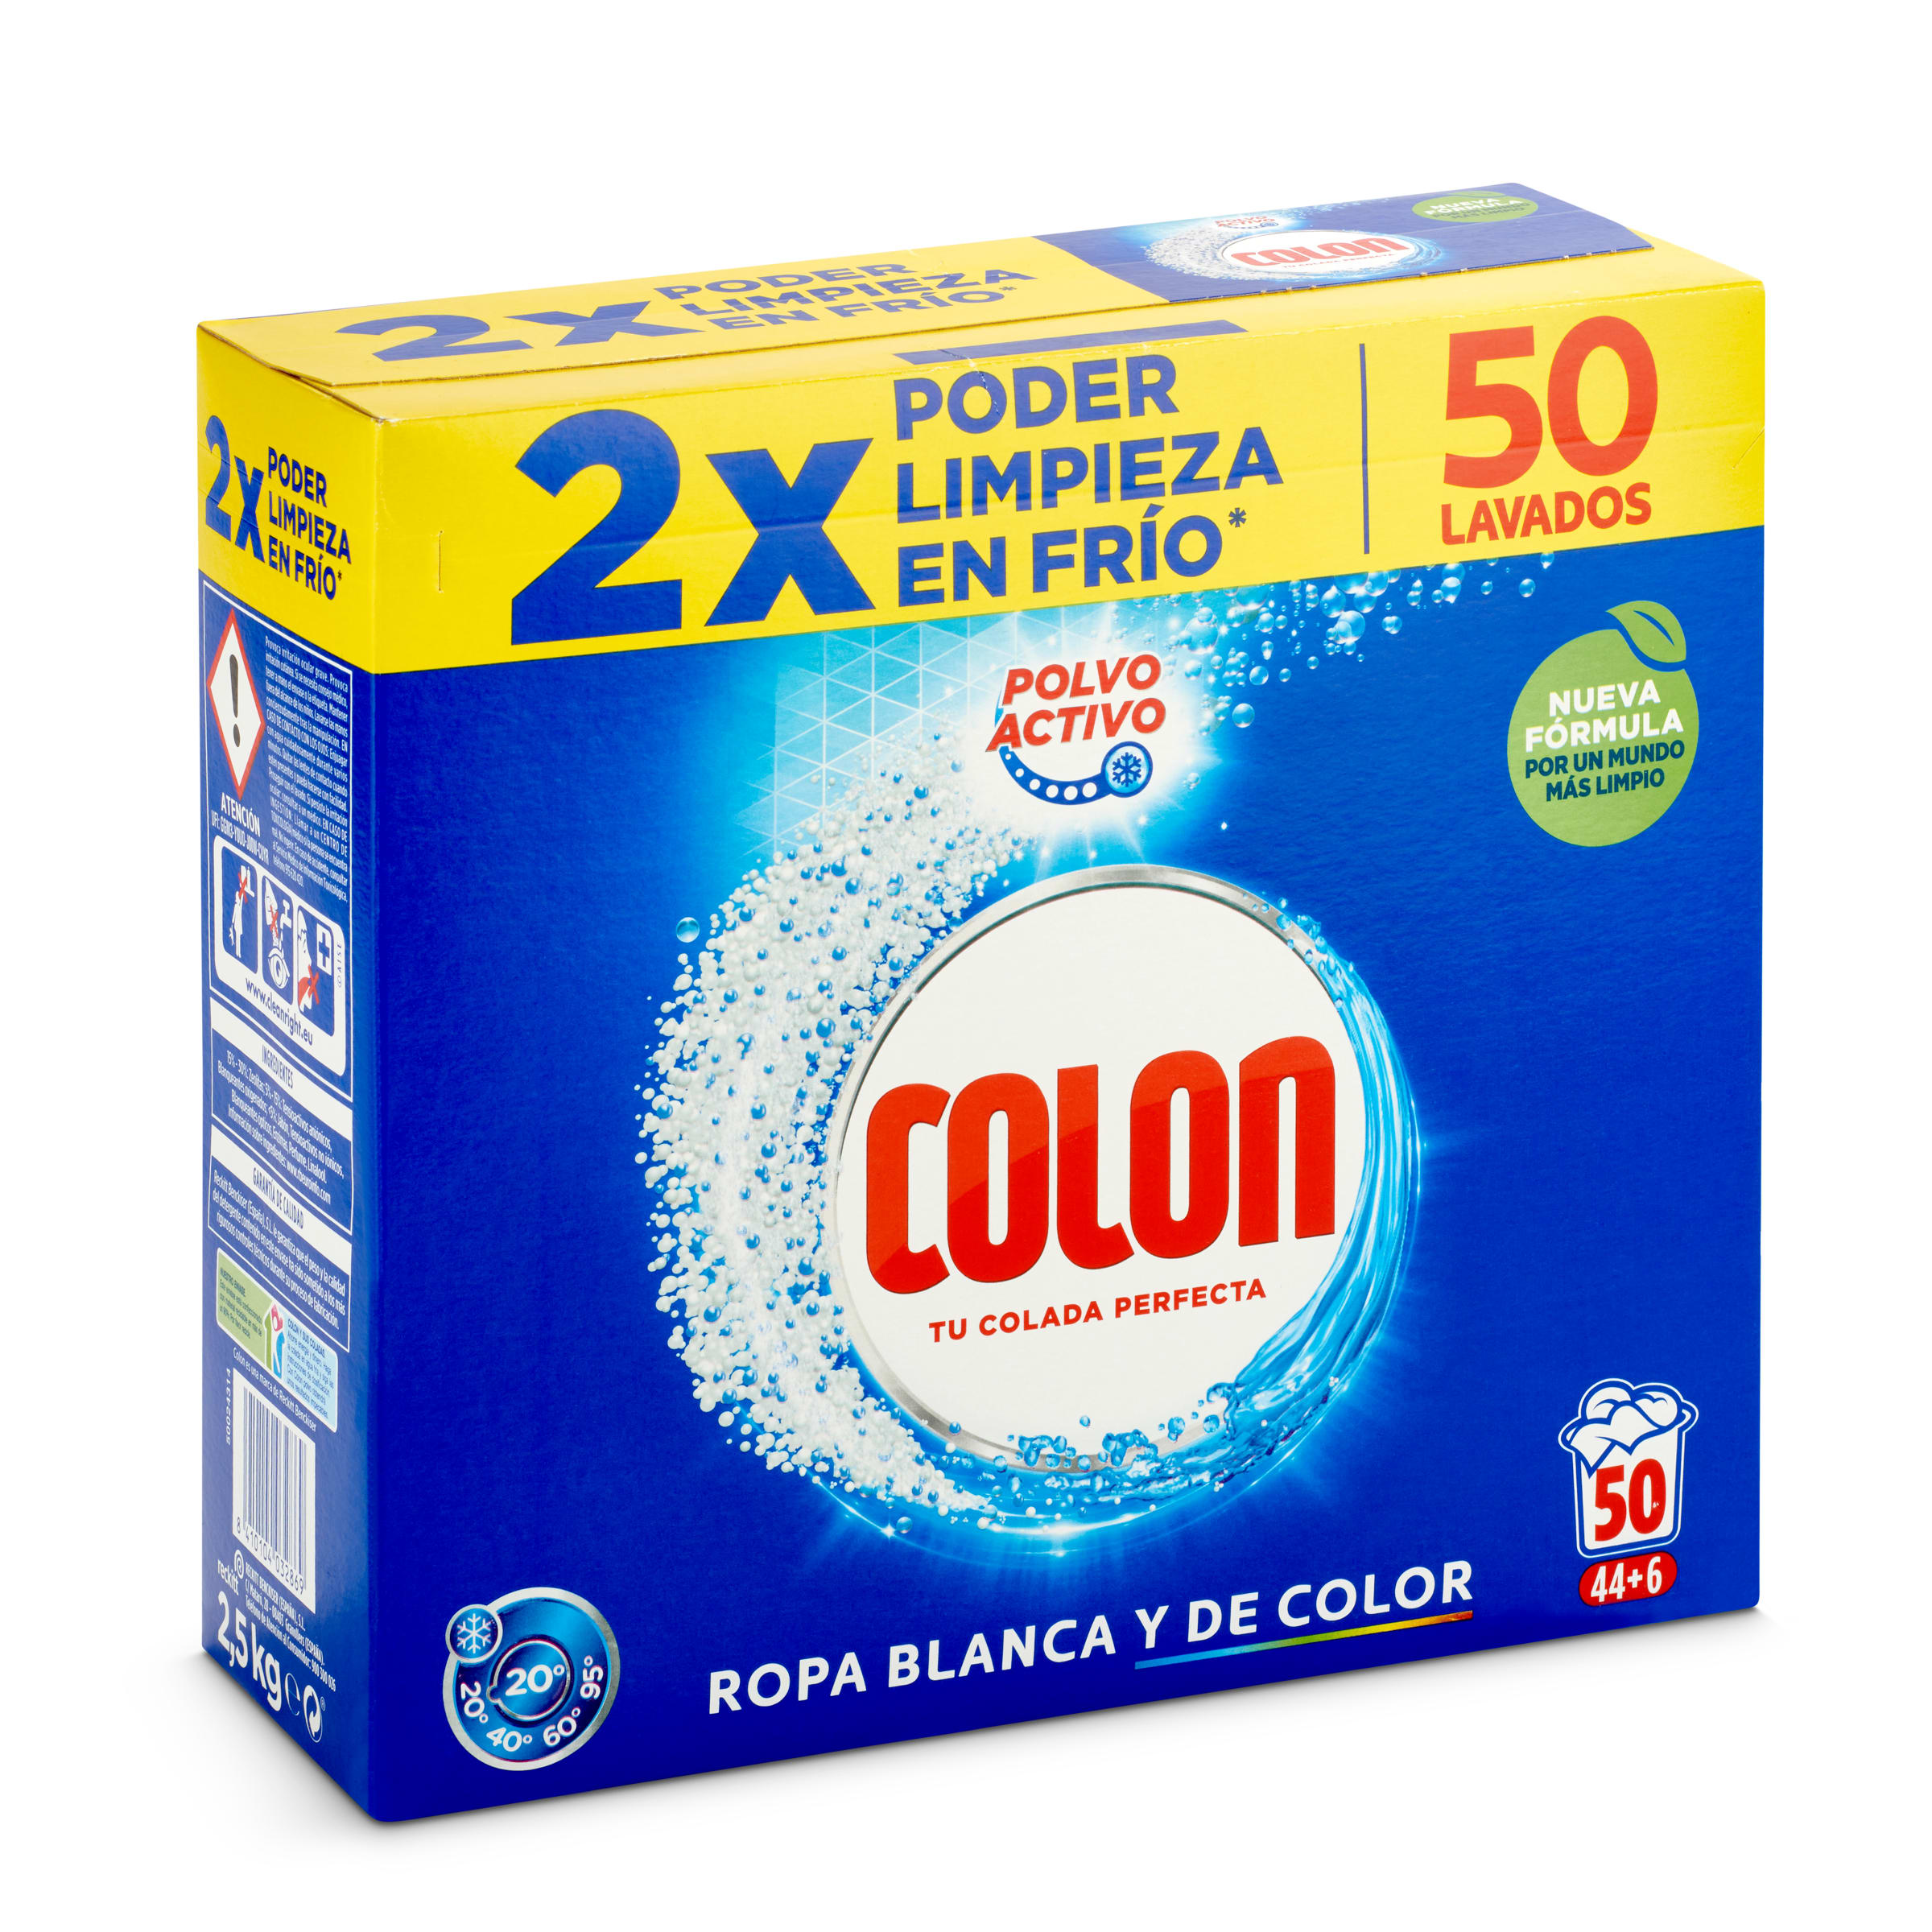 detergente polvo activo, 50 lavados - El Jamón